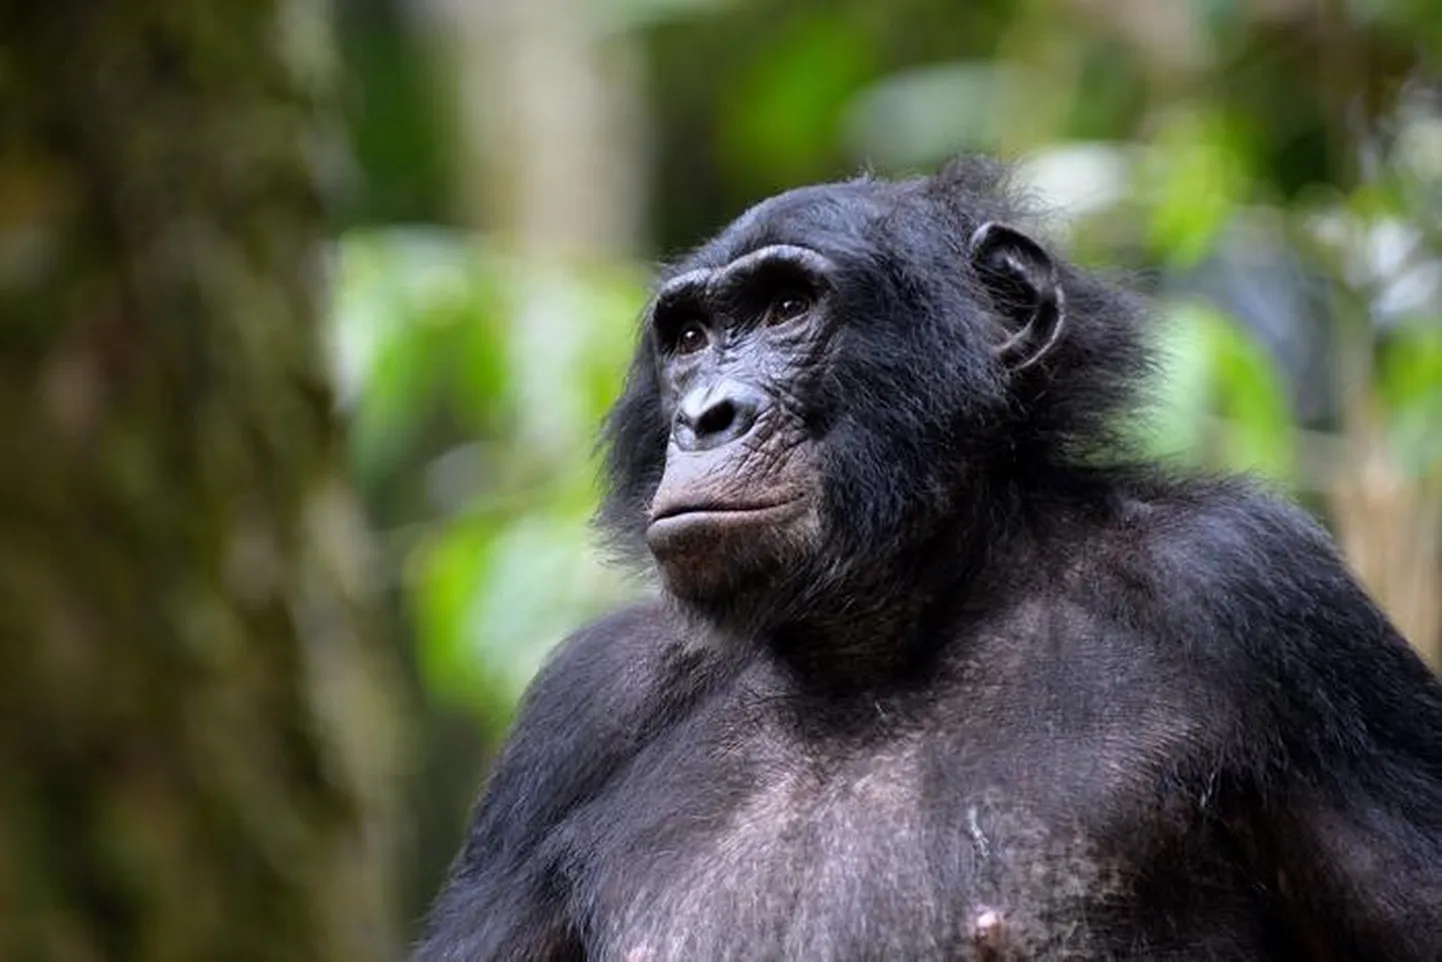 Jacksoni-nimline bonobo Kokolopori Bonobo kaitsealal Kongo Demokraatlikus Vabariigis.